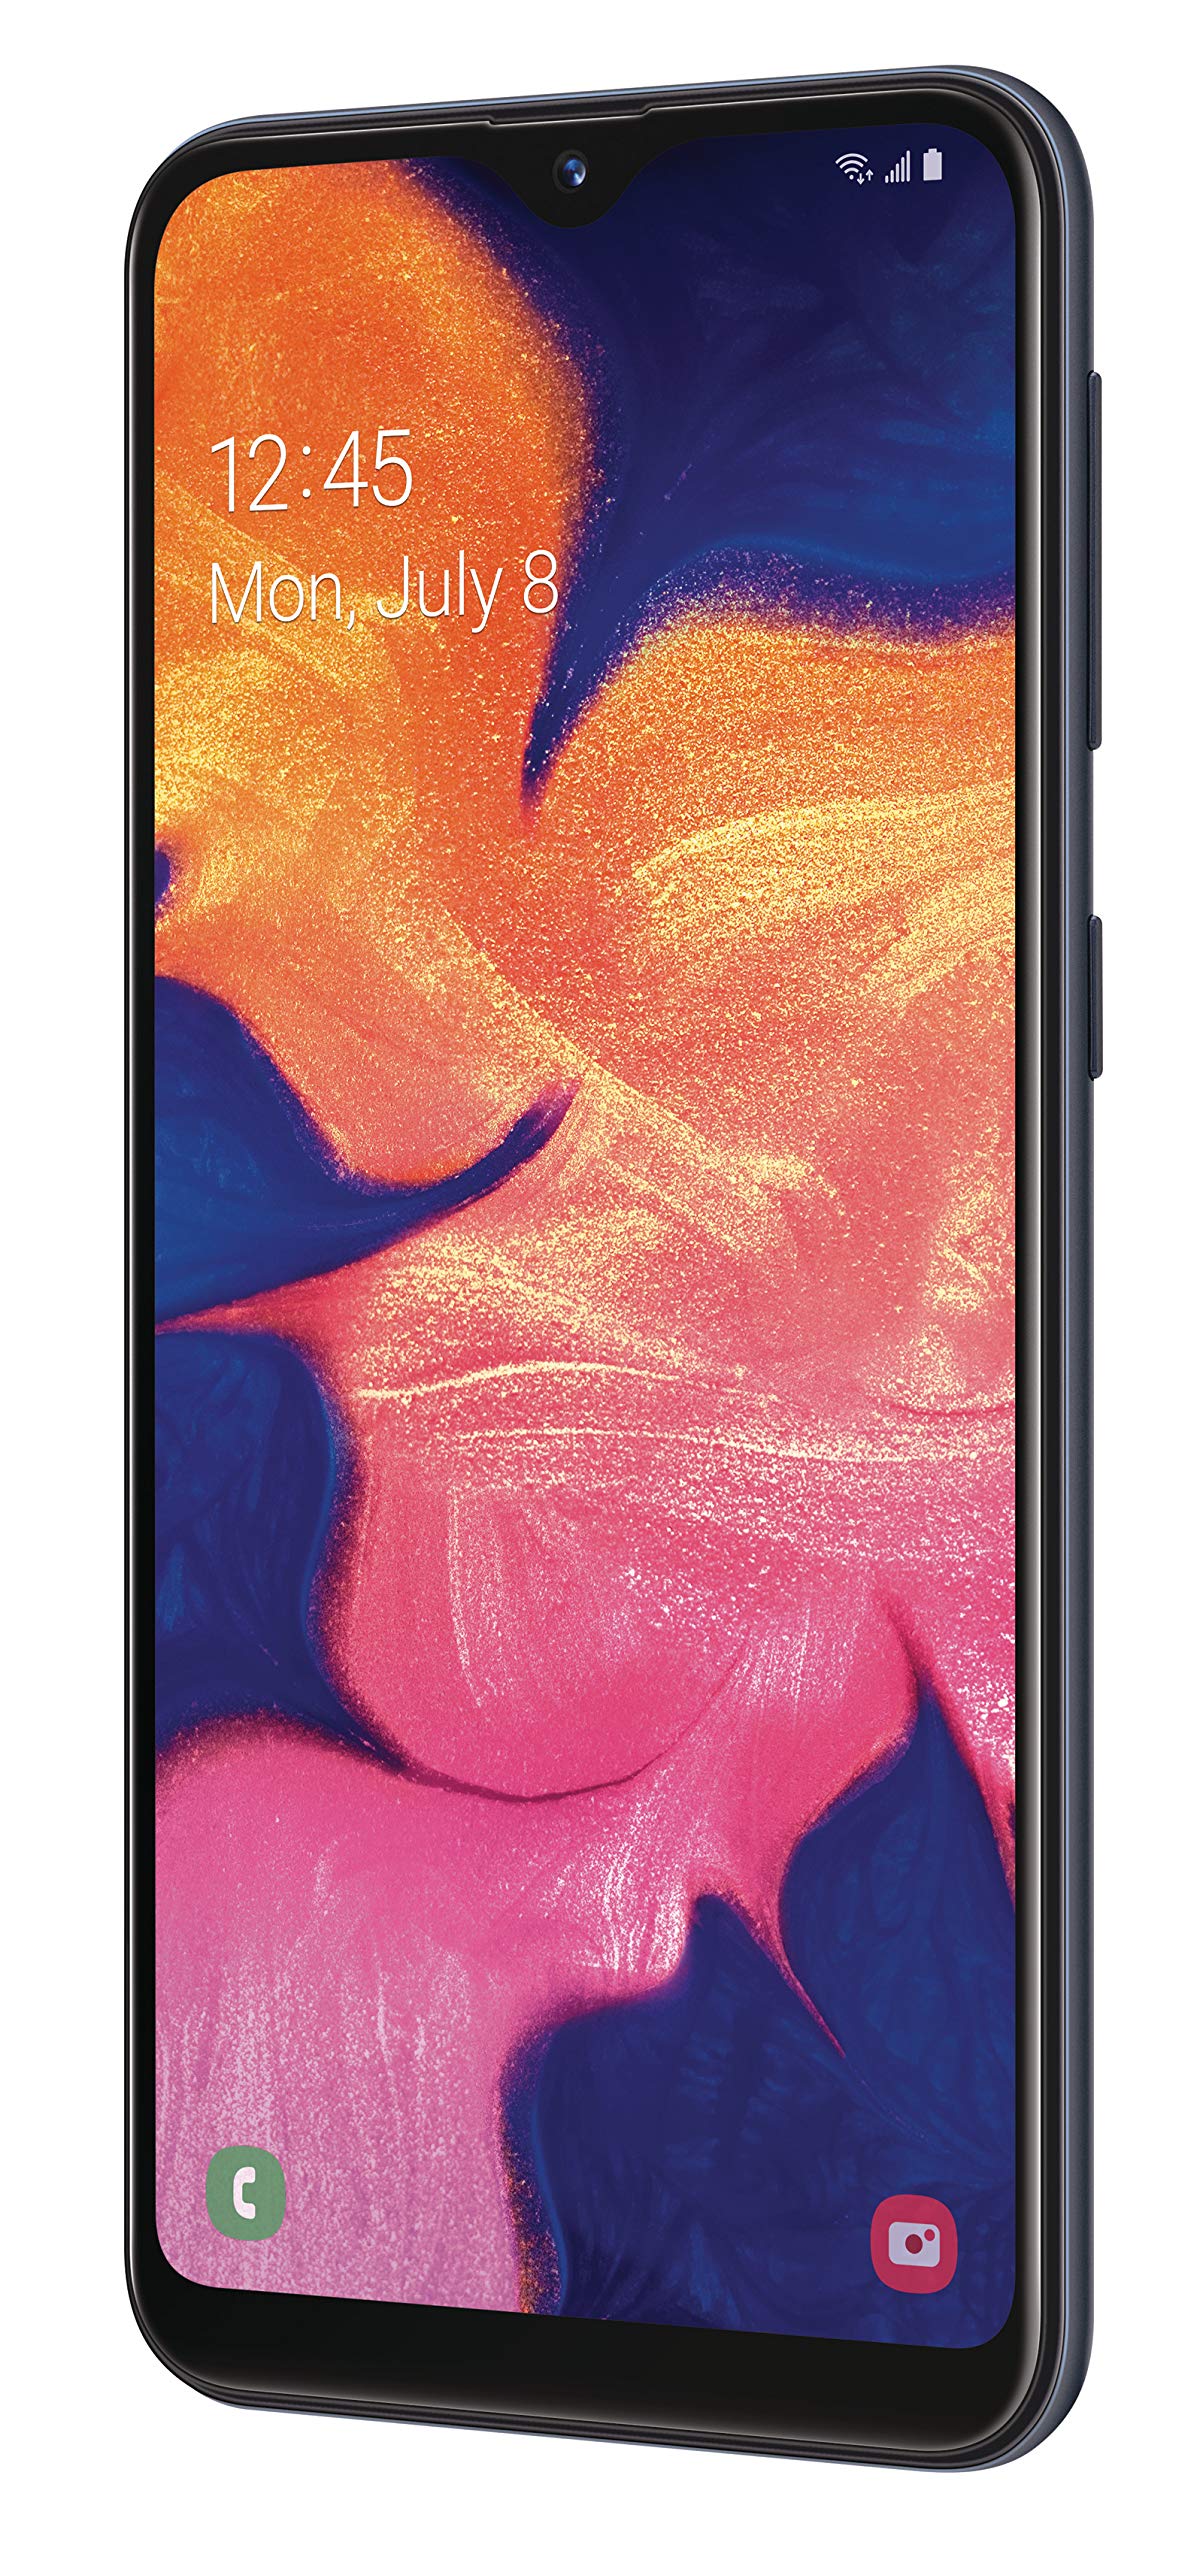 Samsung Galaxy A10e 32GB A102U GSM/CDMA Unlocked Phone - Black